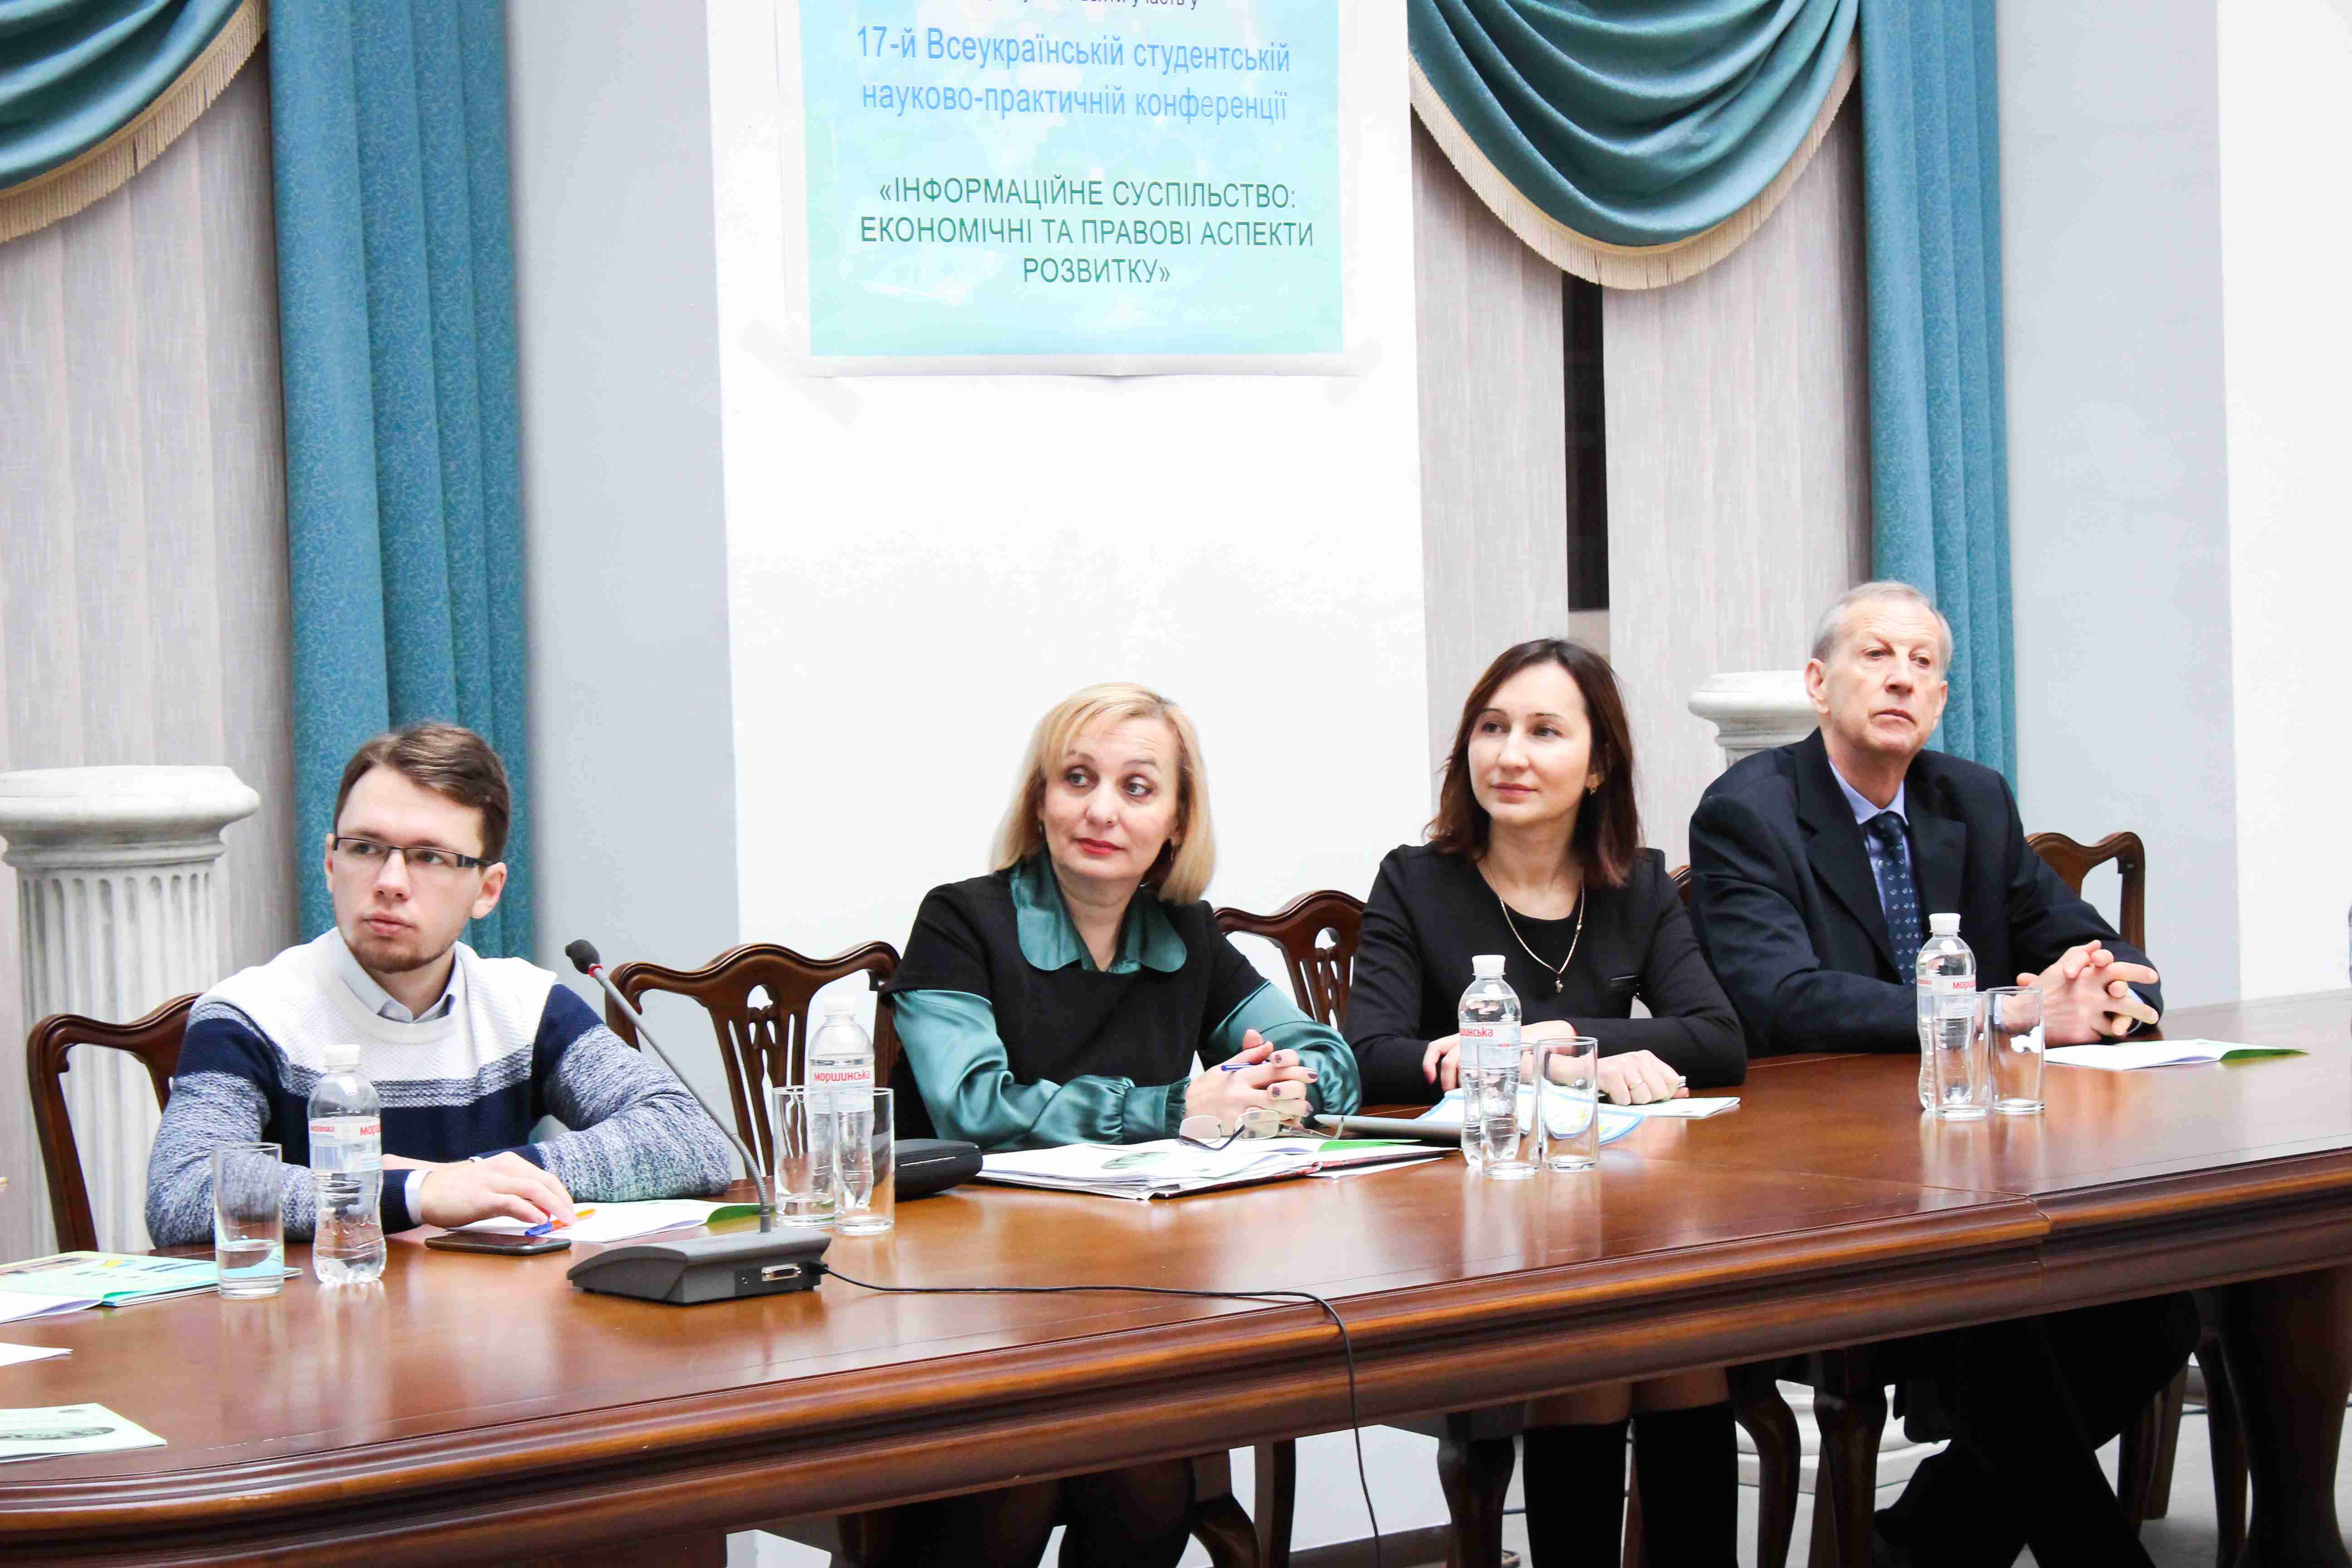 В Університеті ДФС України відбулася  XVII Всеукраїнська студентська науково-практична конференція «Інформаційне суспільство: економічні та правові аспекти розвитку» (іноземними мовами)